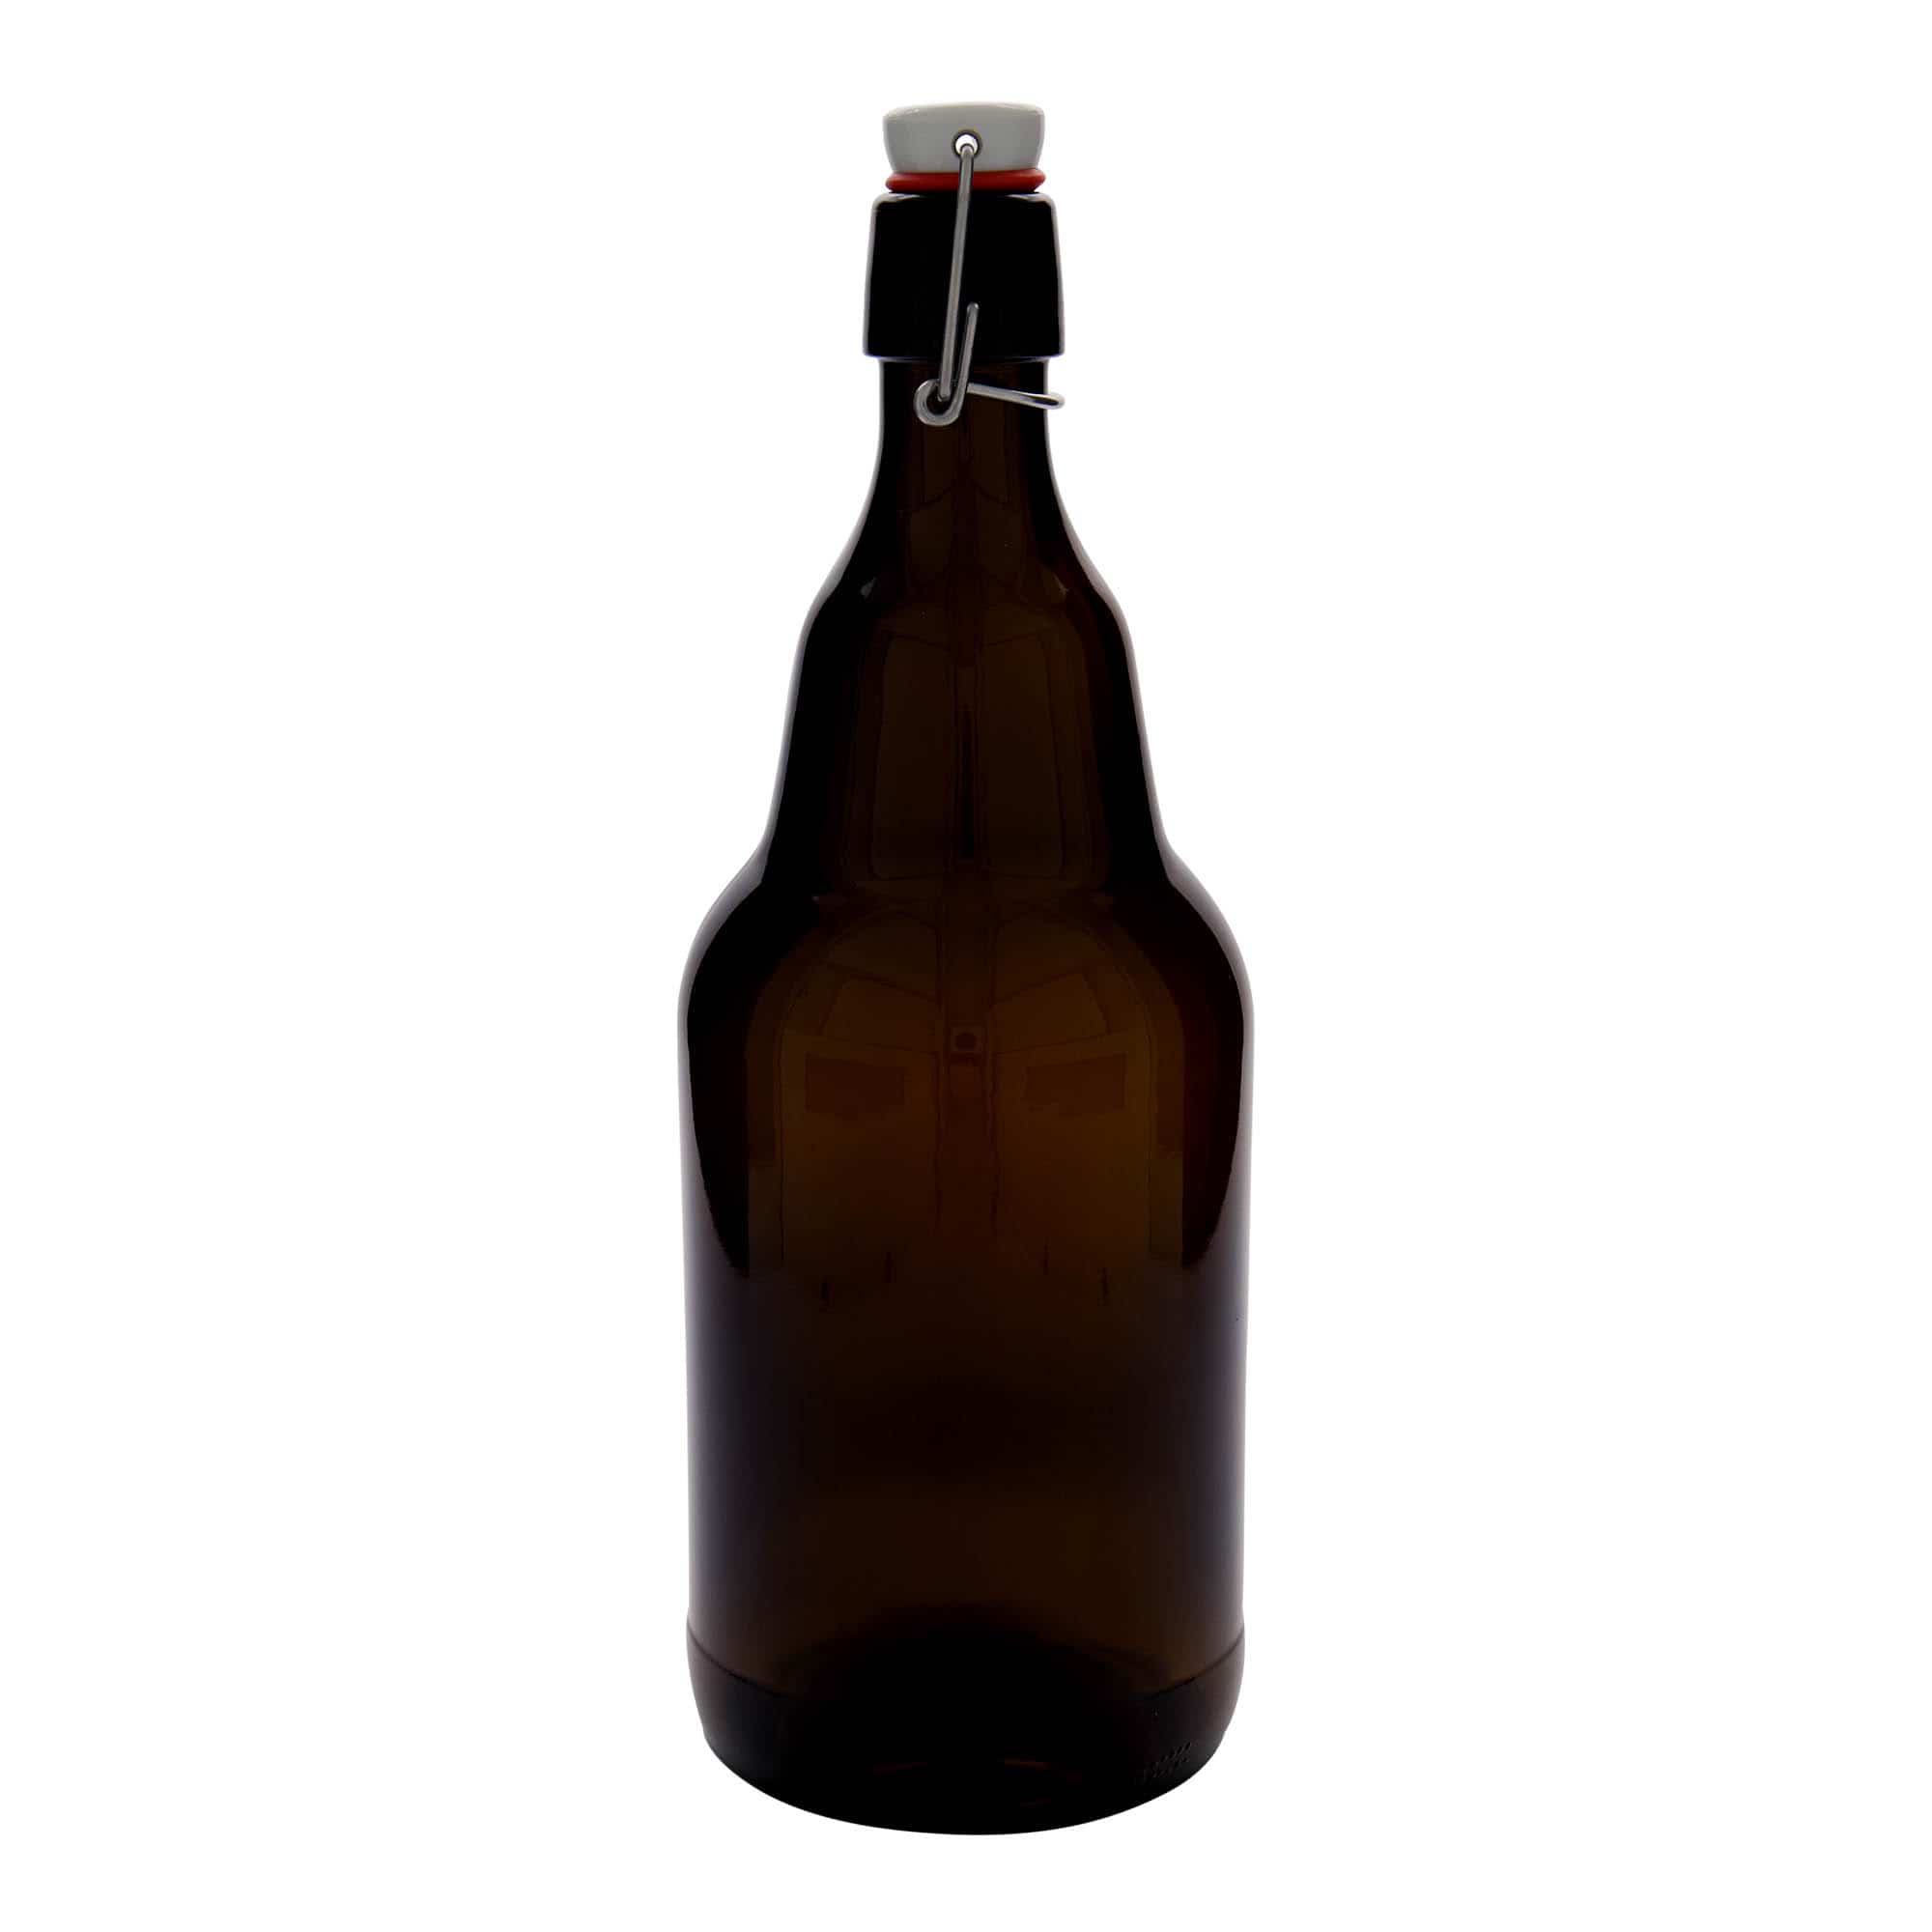 2,000 ml beer bottle, glass, brown, closure: swing top